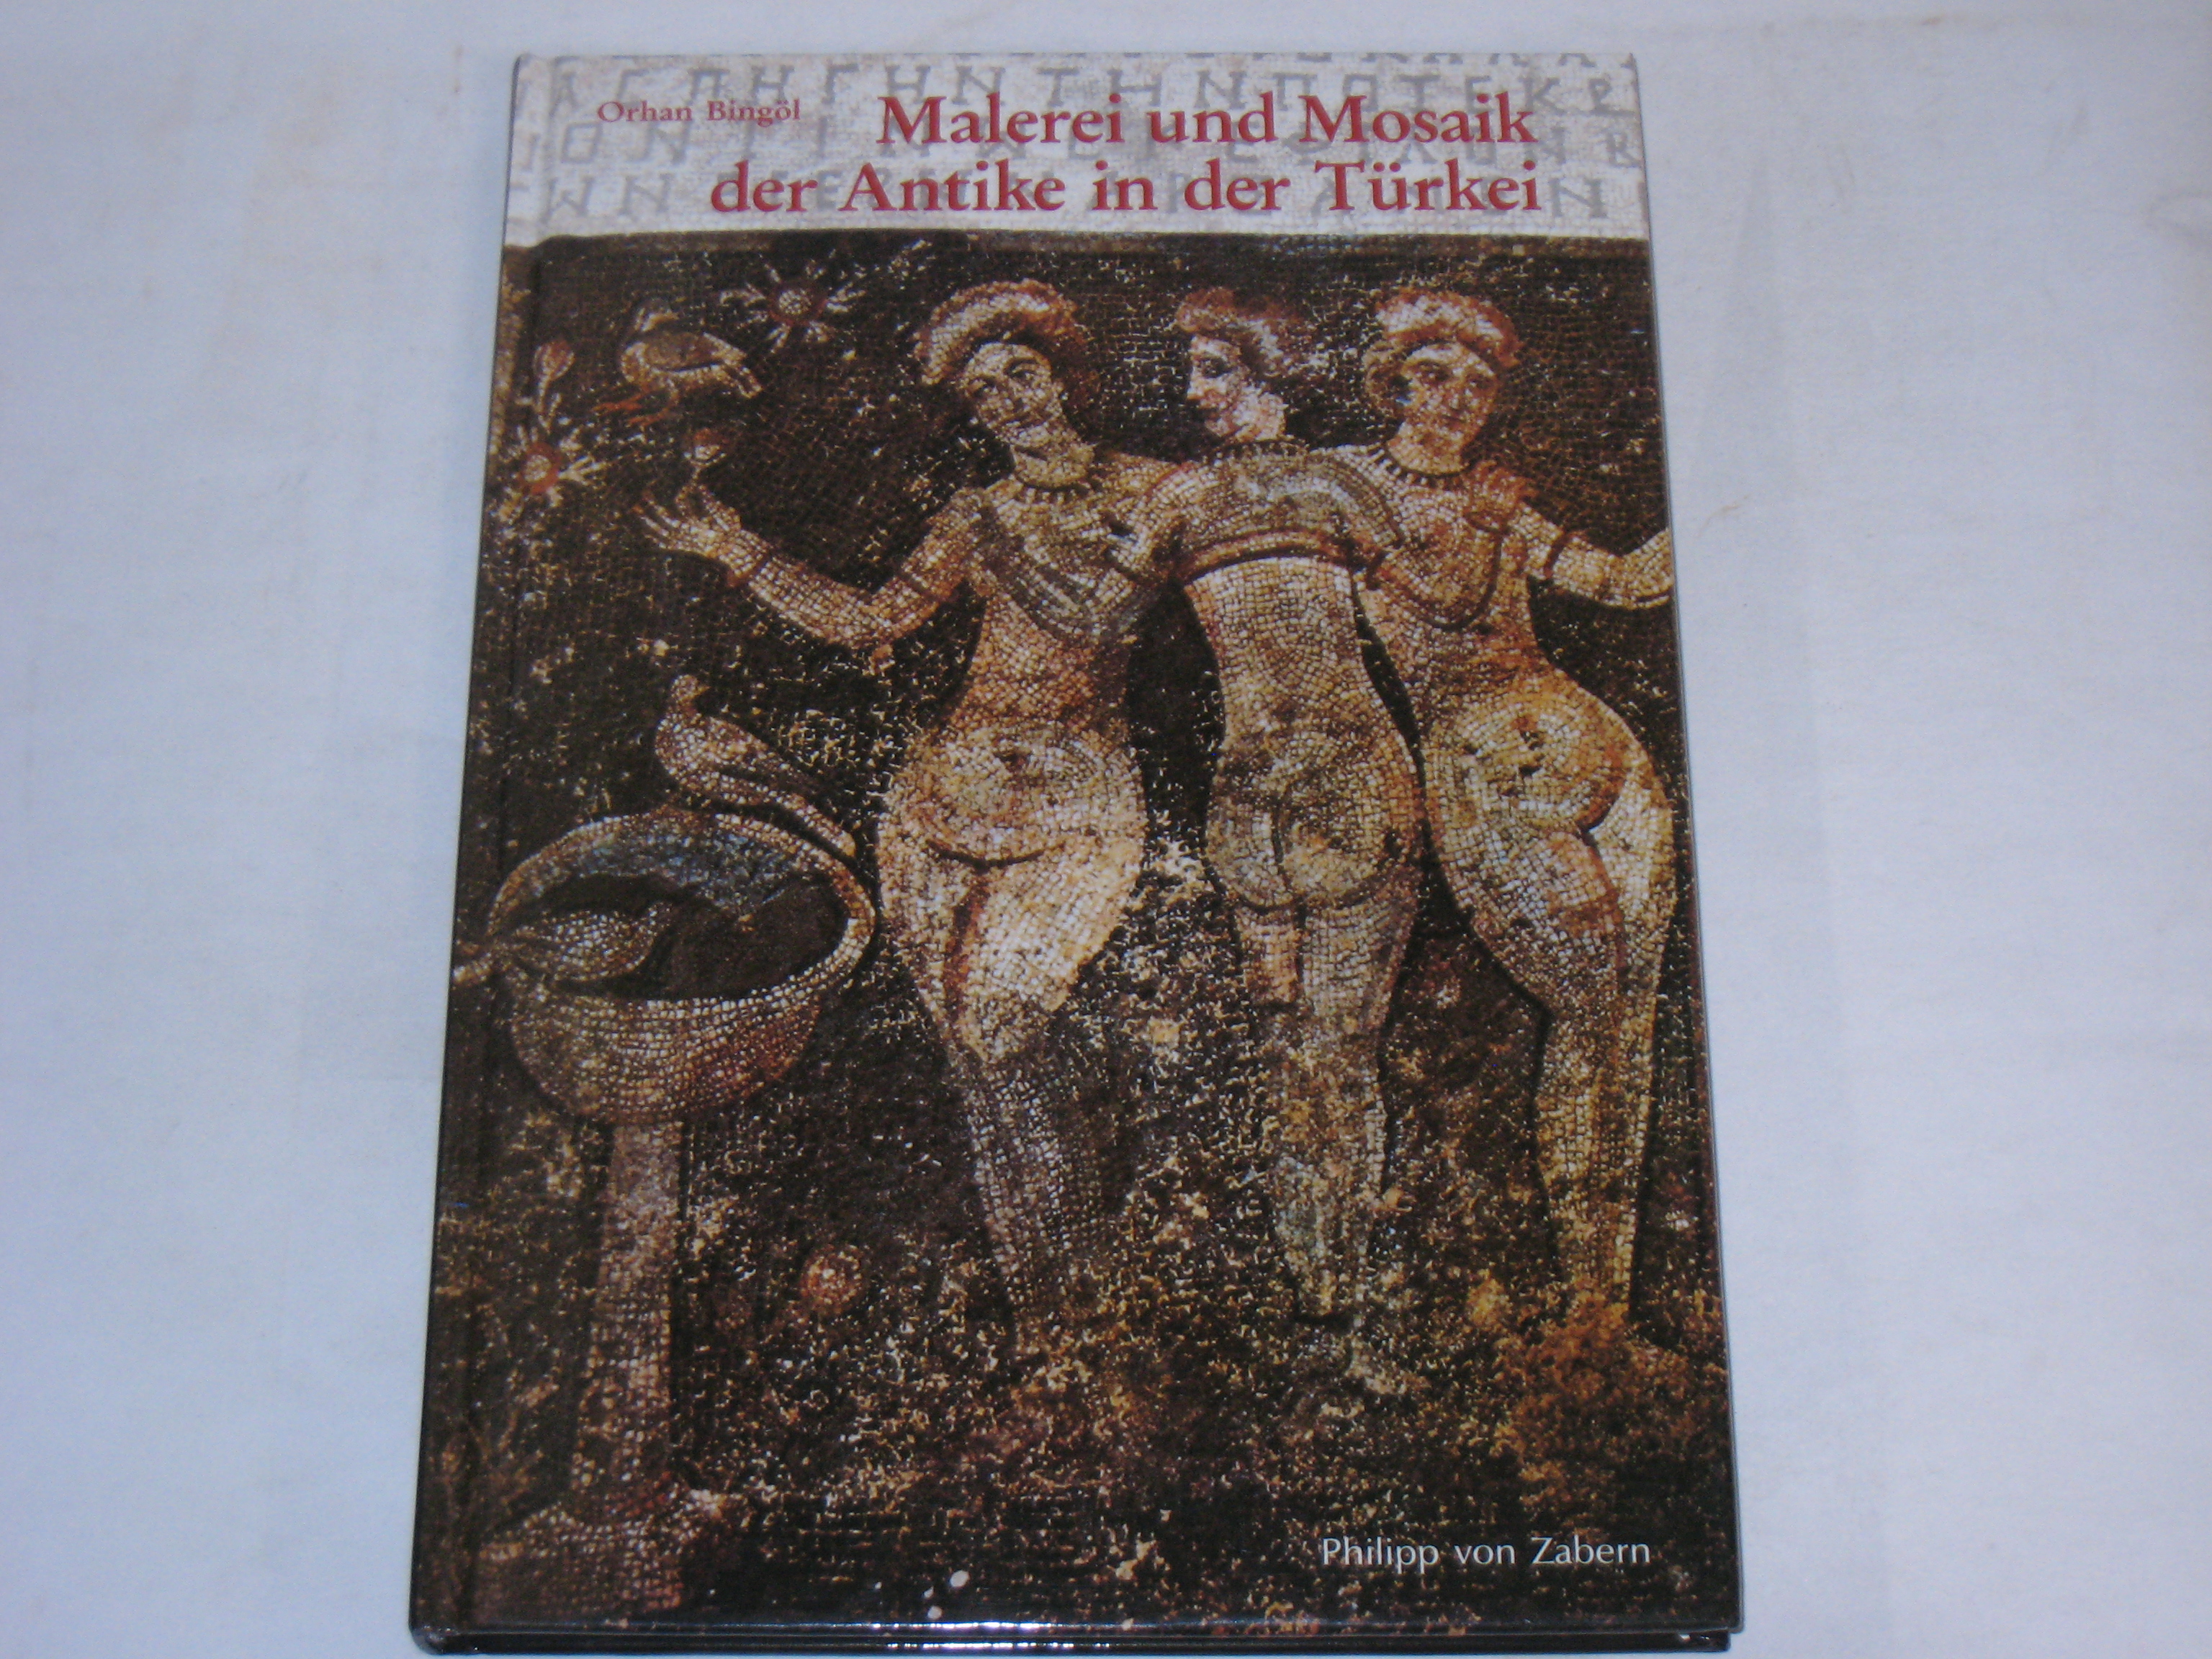 Malerei und Mosaik der Antike in der Türkei. (Kulturgeschichte der Antiken Welt) - Bingöl, Orhan